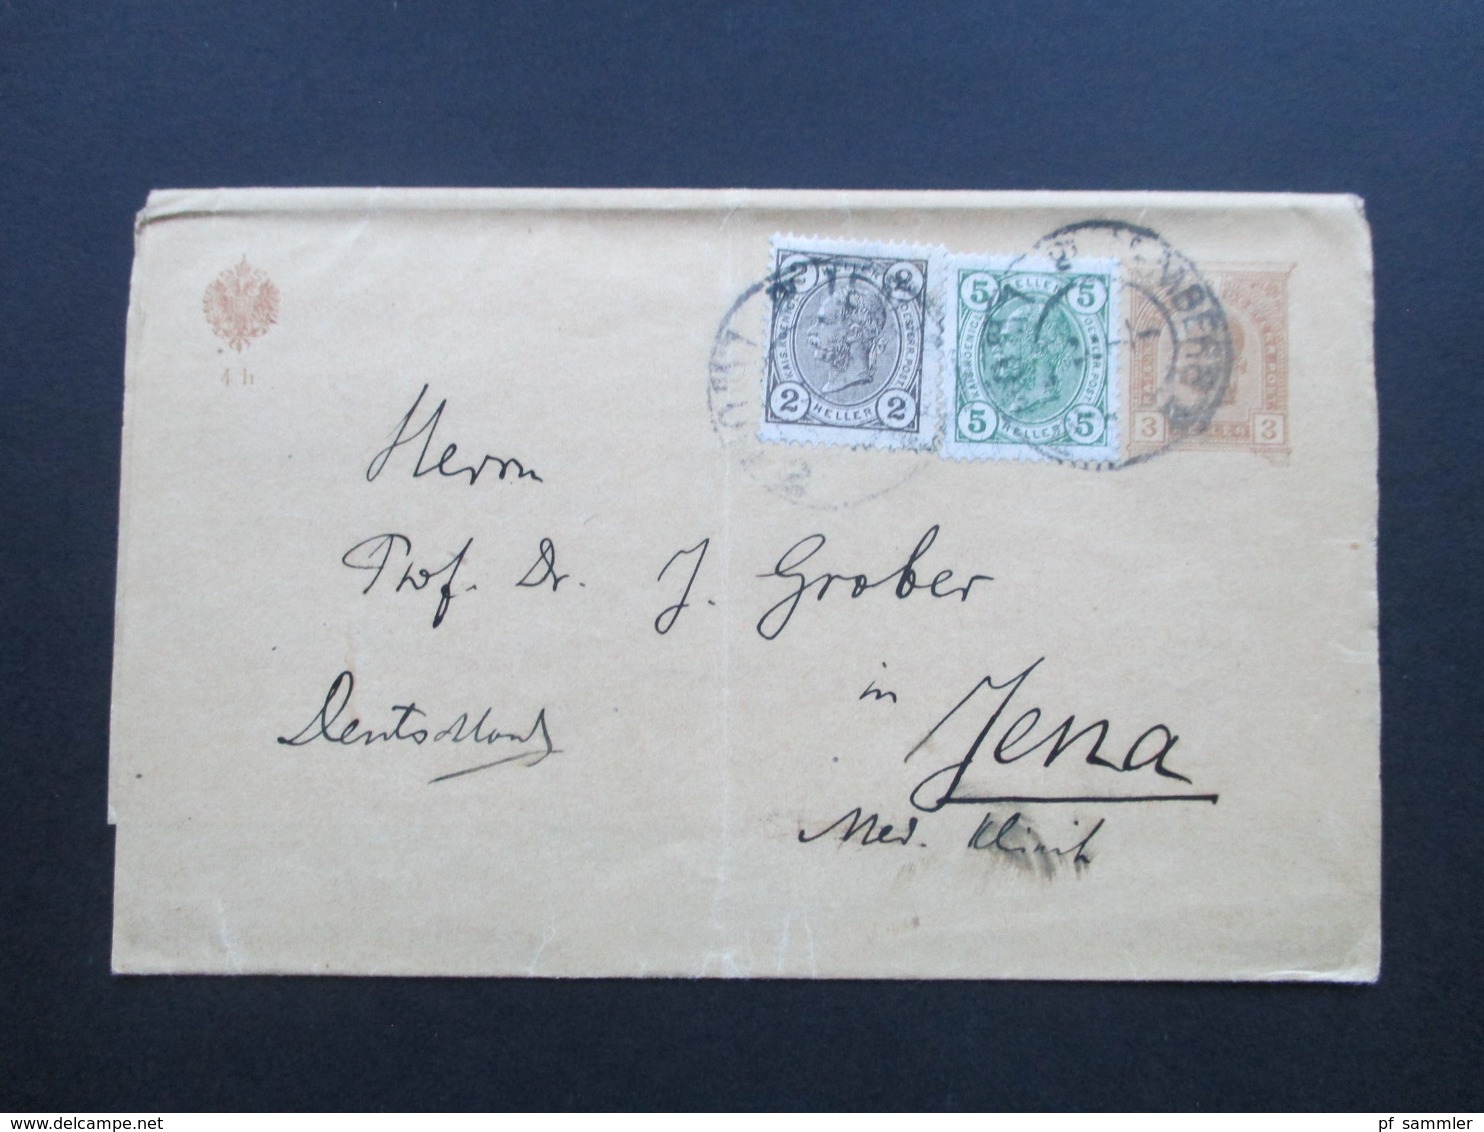 Österreich 1907 Streifband Mit 2 Zusatzfrankaturen Nach Jena. Dreifarben Frankatur!! Prof. Dr. J. Grober - Briefe U. Dokumente